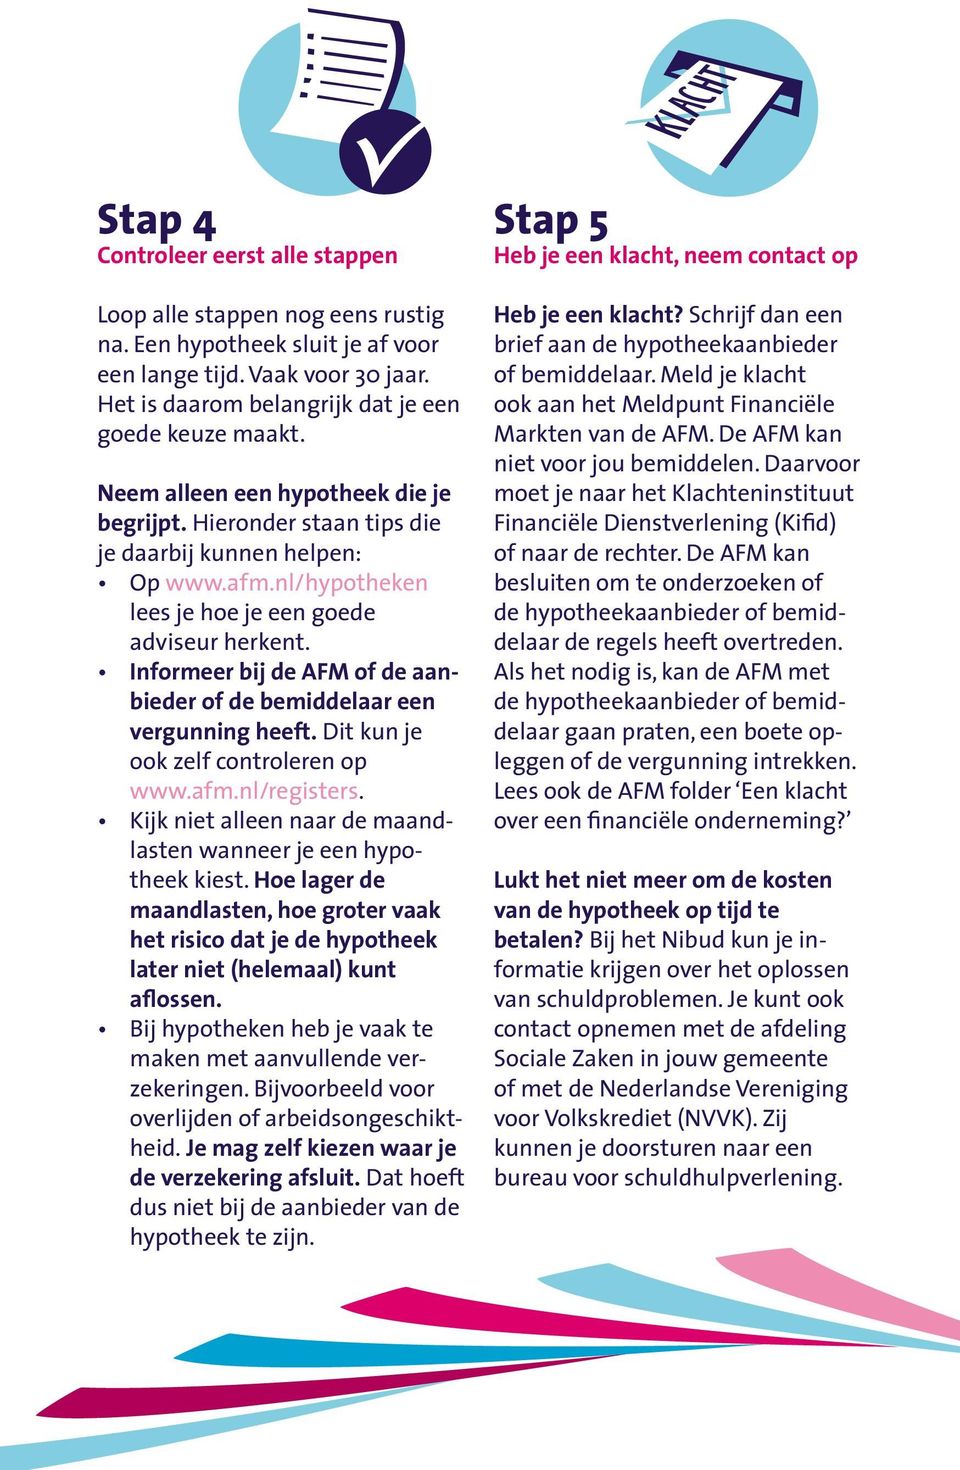 Informeer bij de AFM of de aanbieder of de bemiddelaar een vergunning heeft. Dit kun je ook zelf controleren op www.afm.nl/registers.